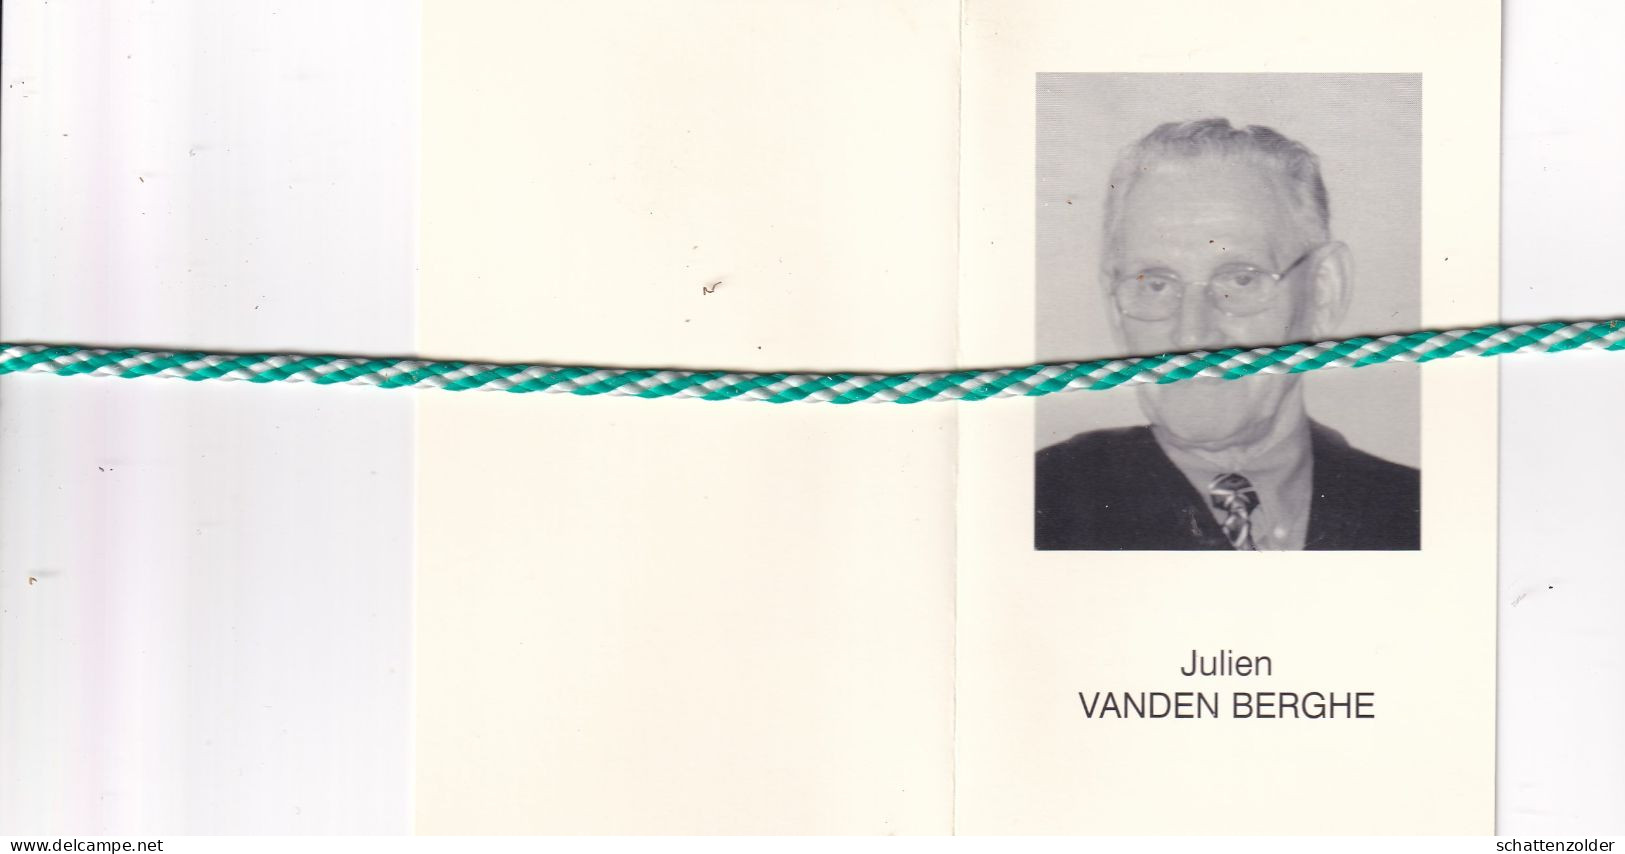 Julien Vanden Berghe-Comergo, Waarschoot 1928, Eeklo 2001. Foto - Obituary Notices